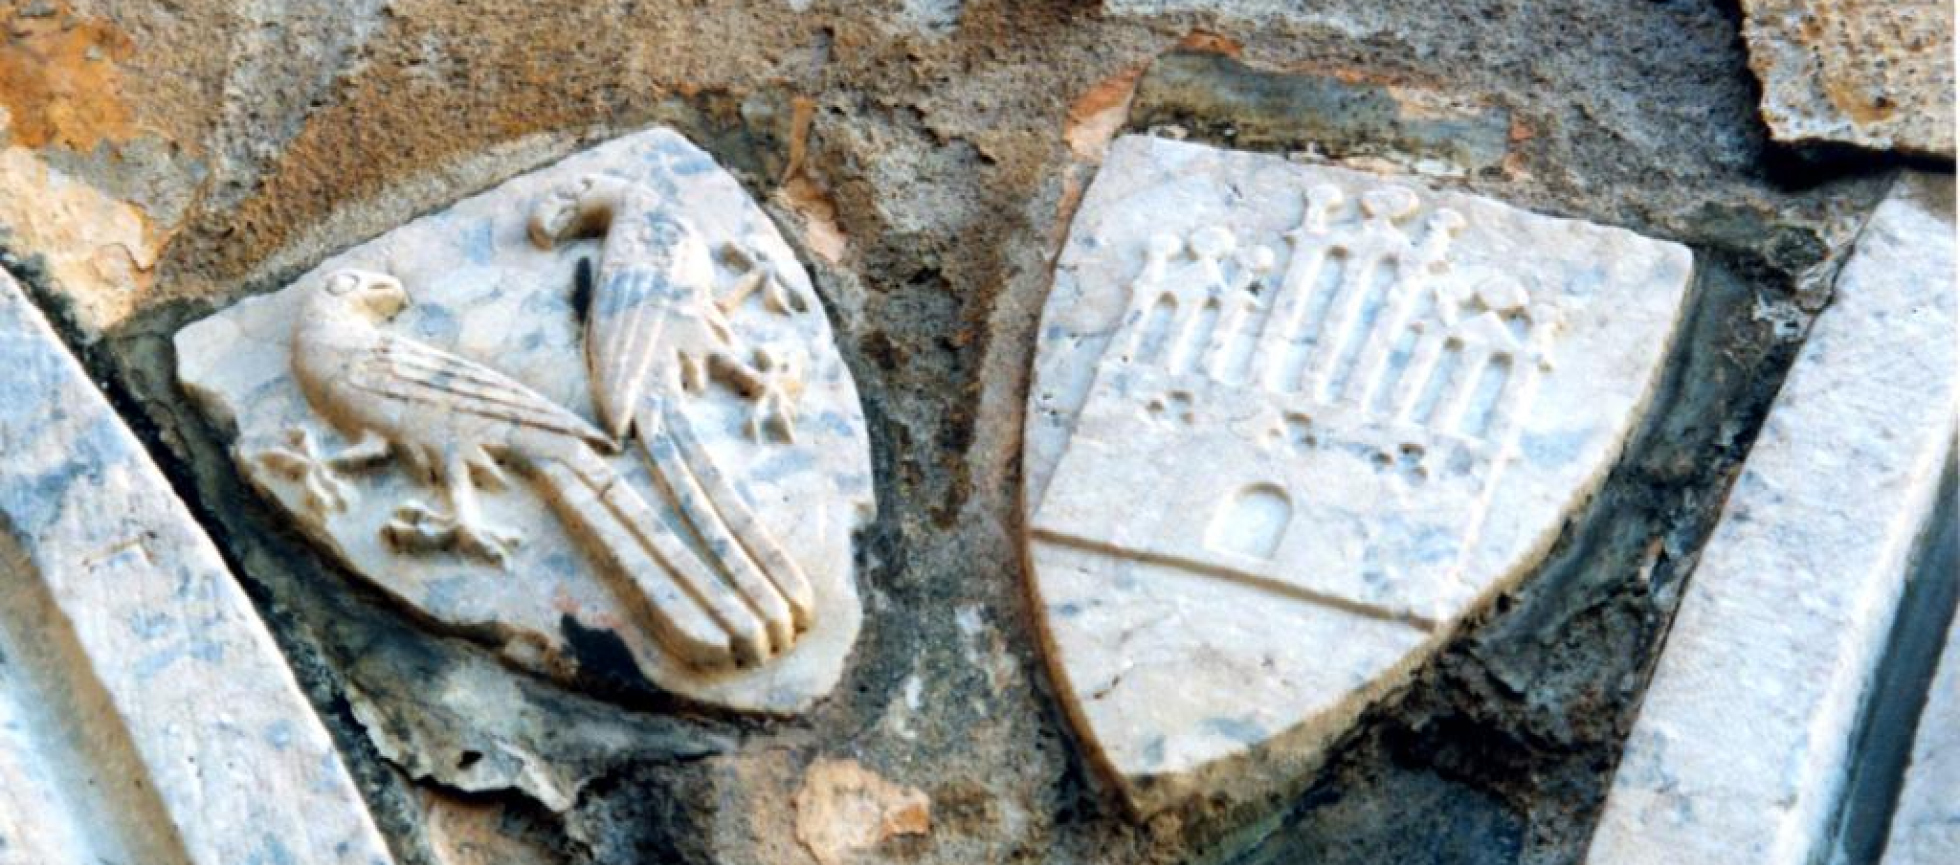 Armoiries des familles enterrées dans le cloitre du couvent des franciscains: 2 opiseax face à face ou un fronton d'église